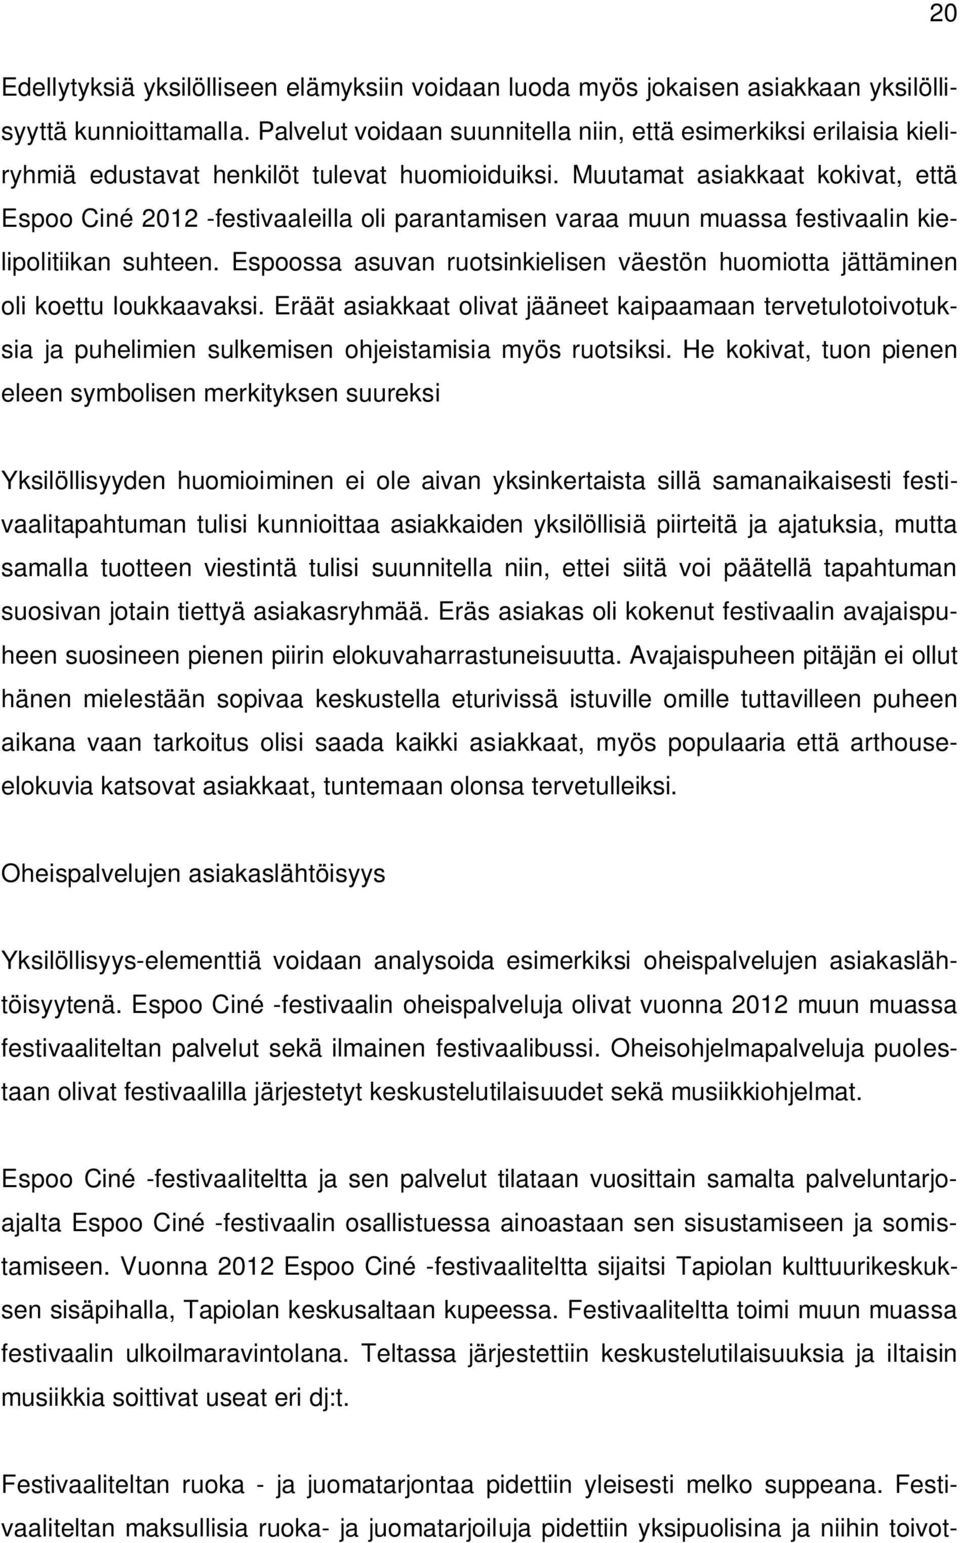 Muutamat asiakkaat kokivat, että Espoo Ciné 2012 -festivaaleilla oli parantamisen varaa muun muassa festivaalin kielipolitiikan suhteen.